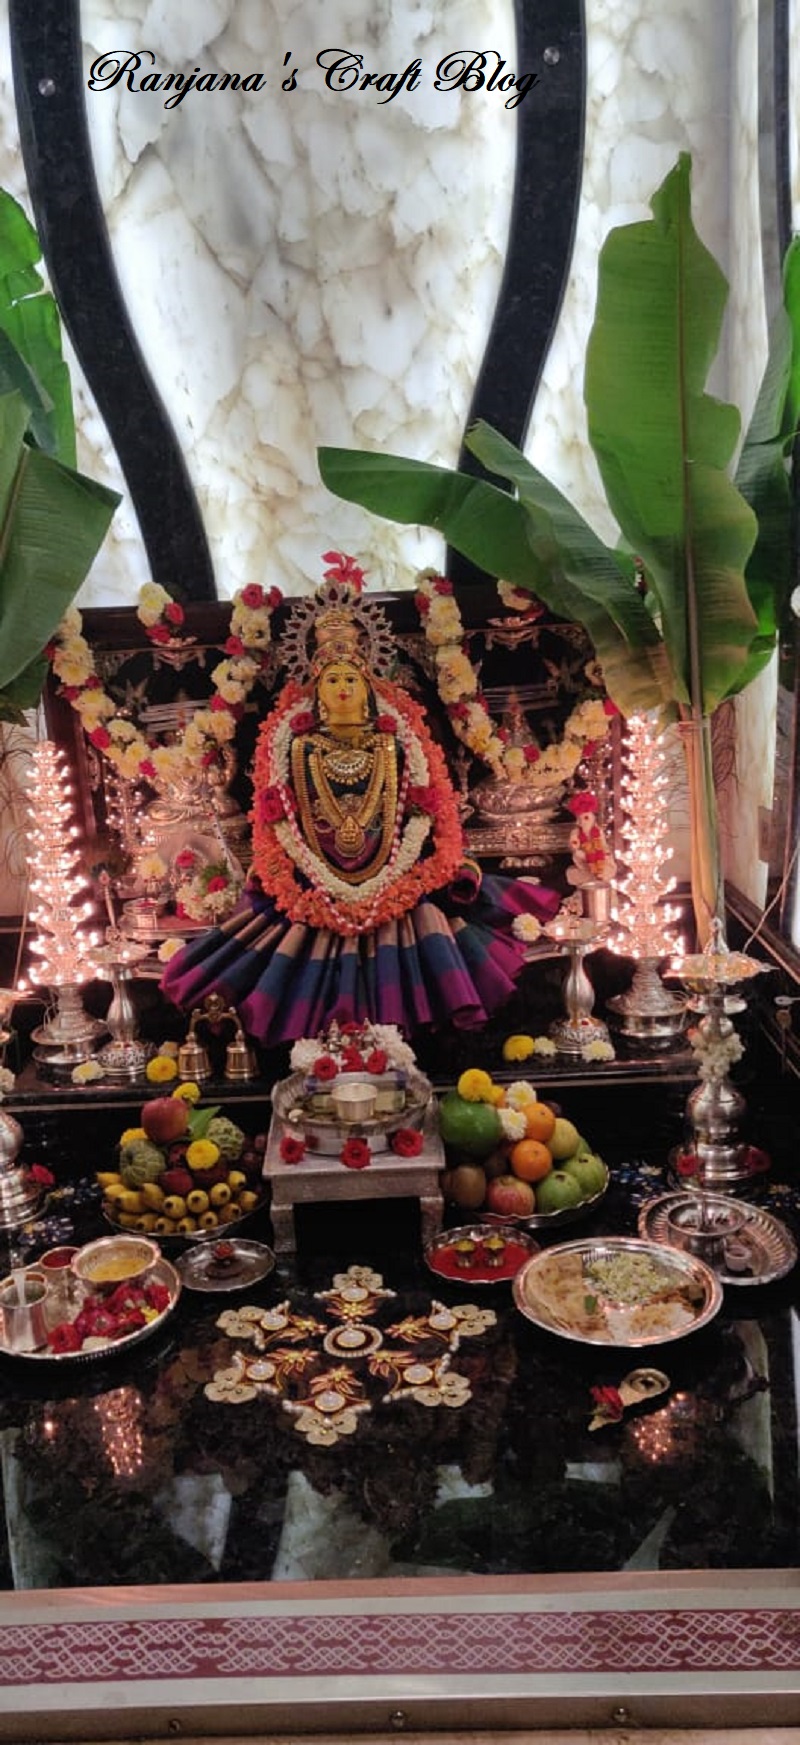 Festive decorations - Varamahalakshmi Pooje - Ranjana's Craft Blog